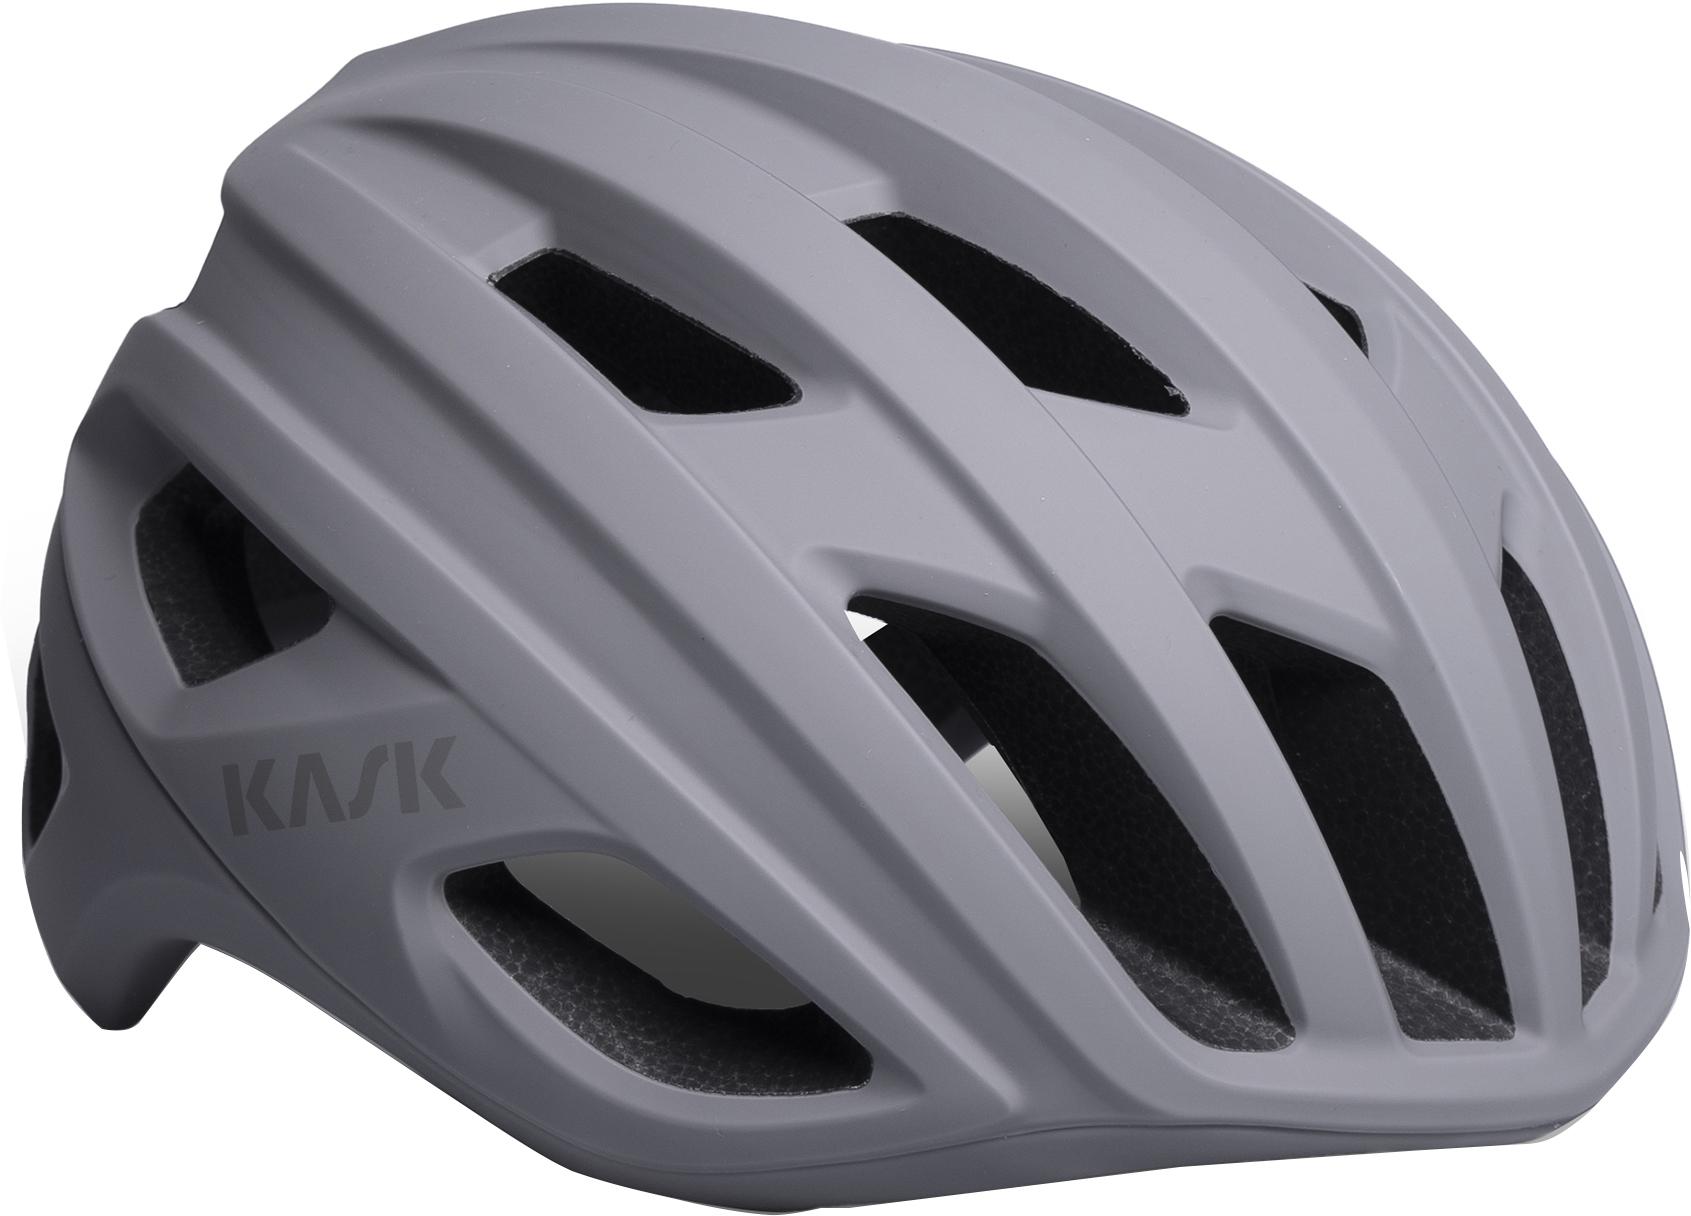 Kask Mojito3 Matte Road Helmet (wg11) - Grey Matte